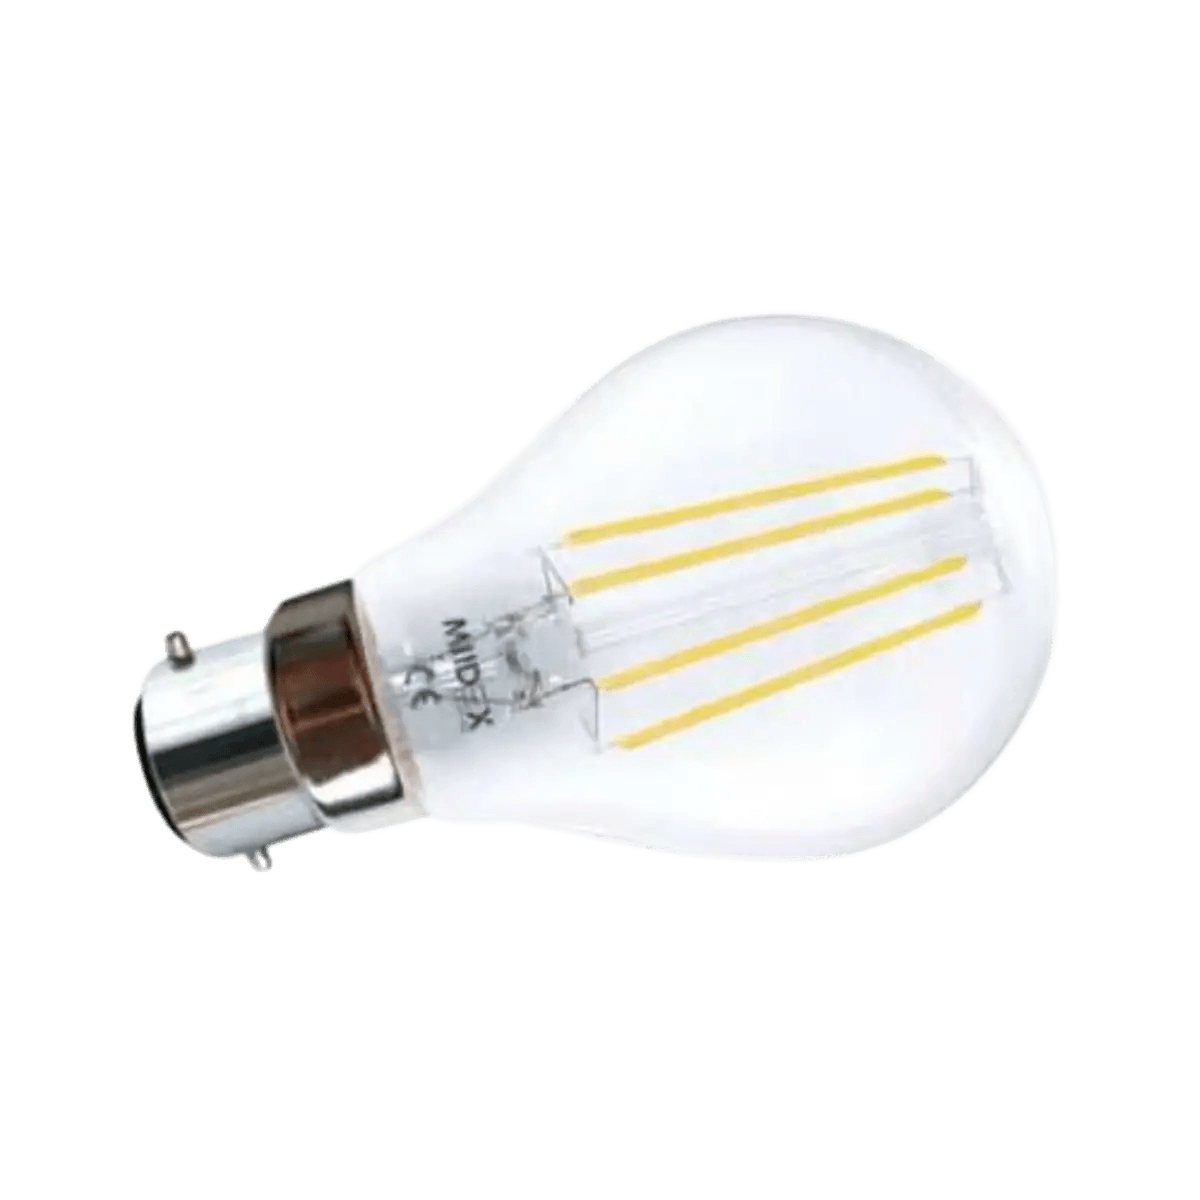 Accessoires Energie - Ampoule Spot Halogène MR16 - 12V - 50W